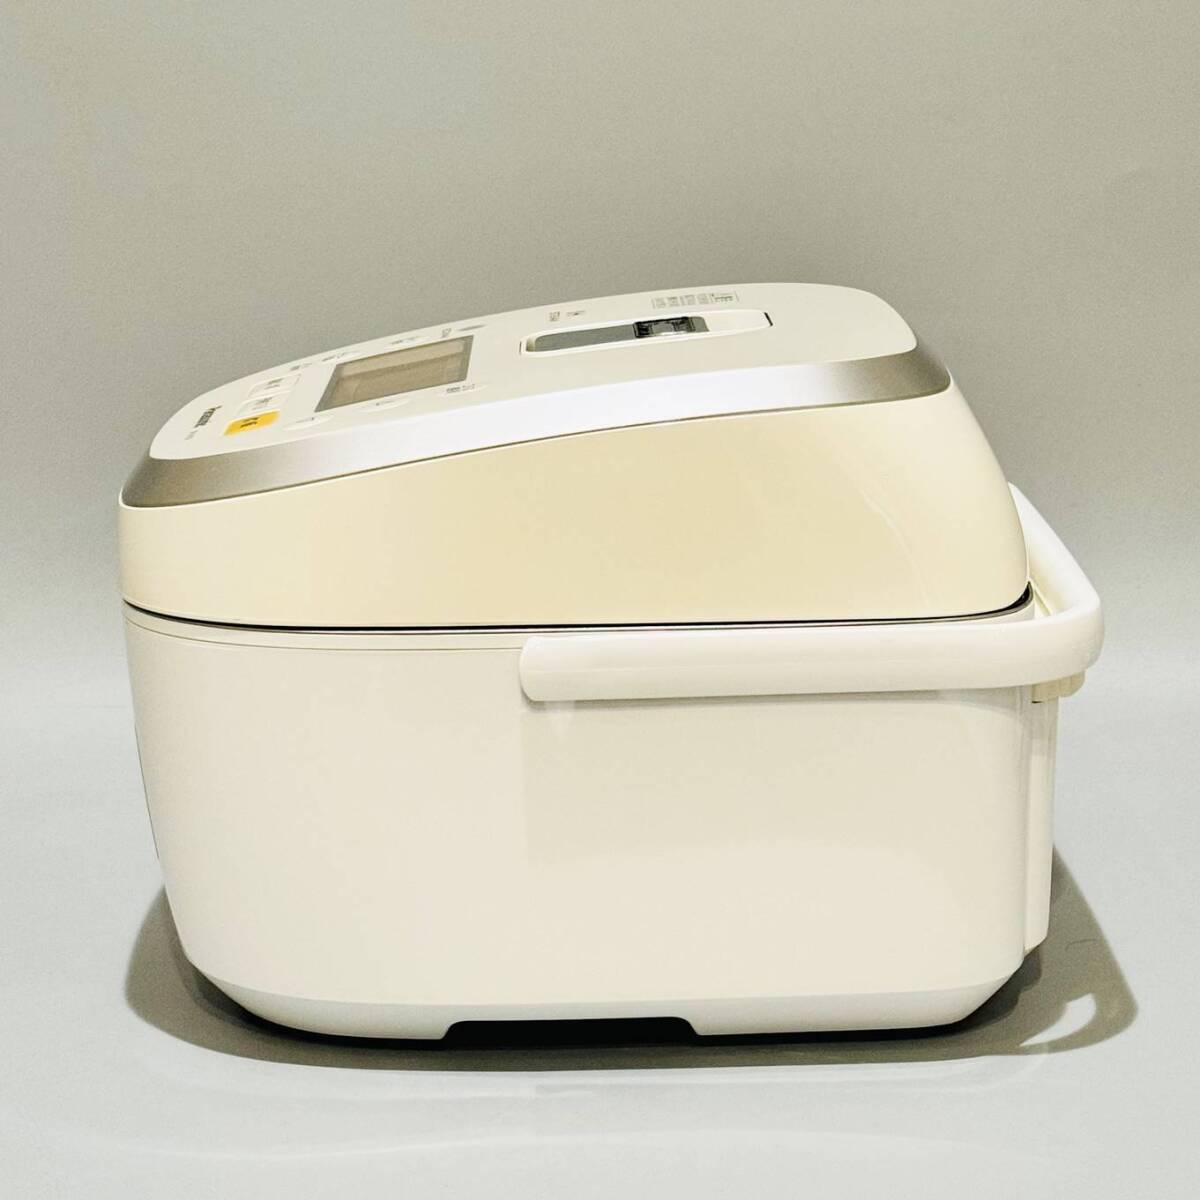 甲HK9975 美品 クリーニング済 動作確認済 2013年製 5.5合炊 パナソニック Panasonic スチームIHジャー炊飯器 SR-SH103 ホワイトの画像6